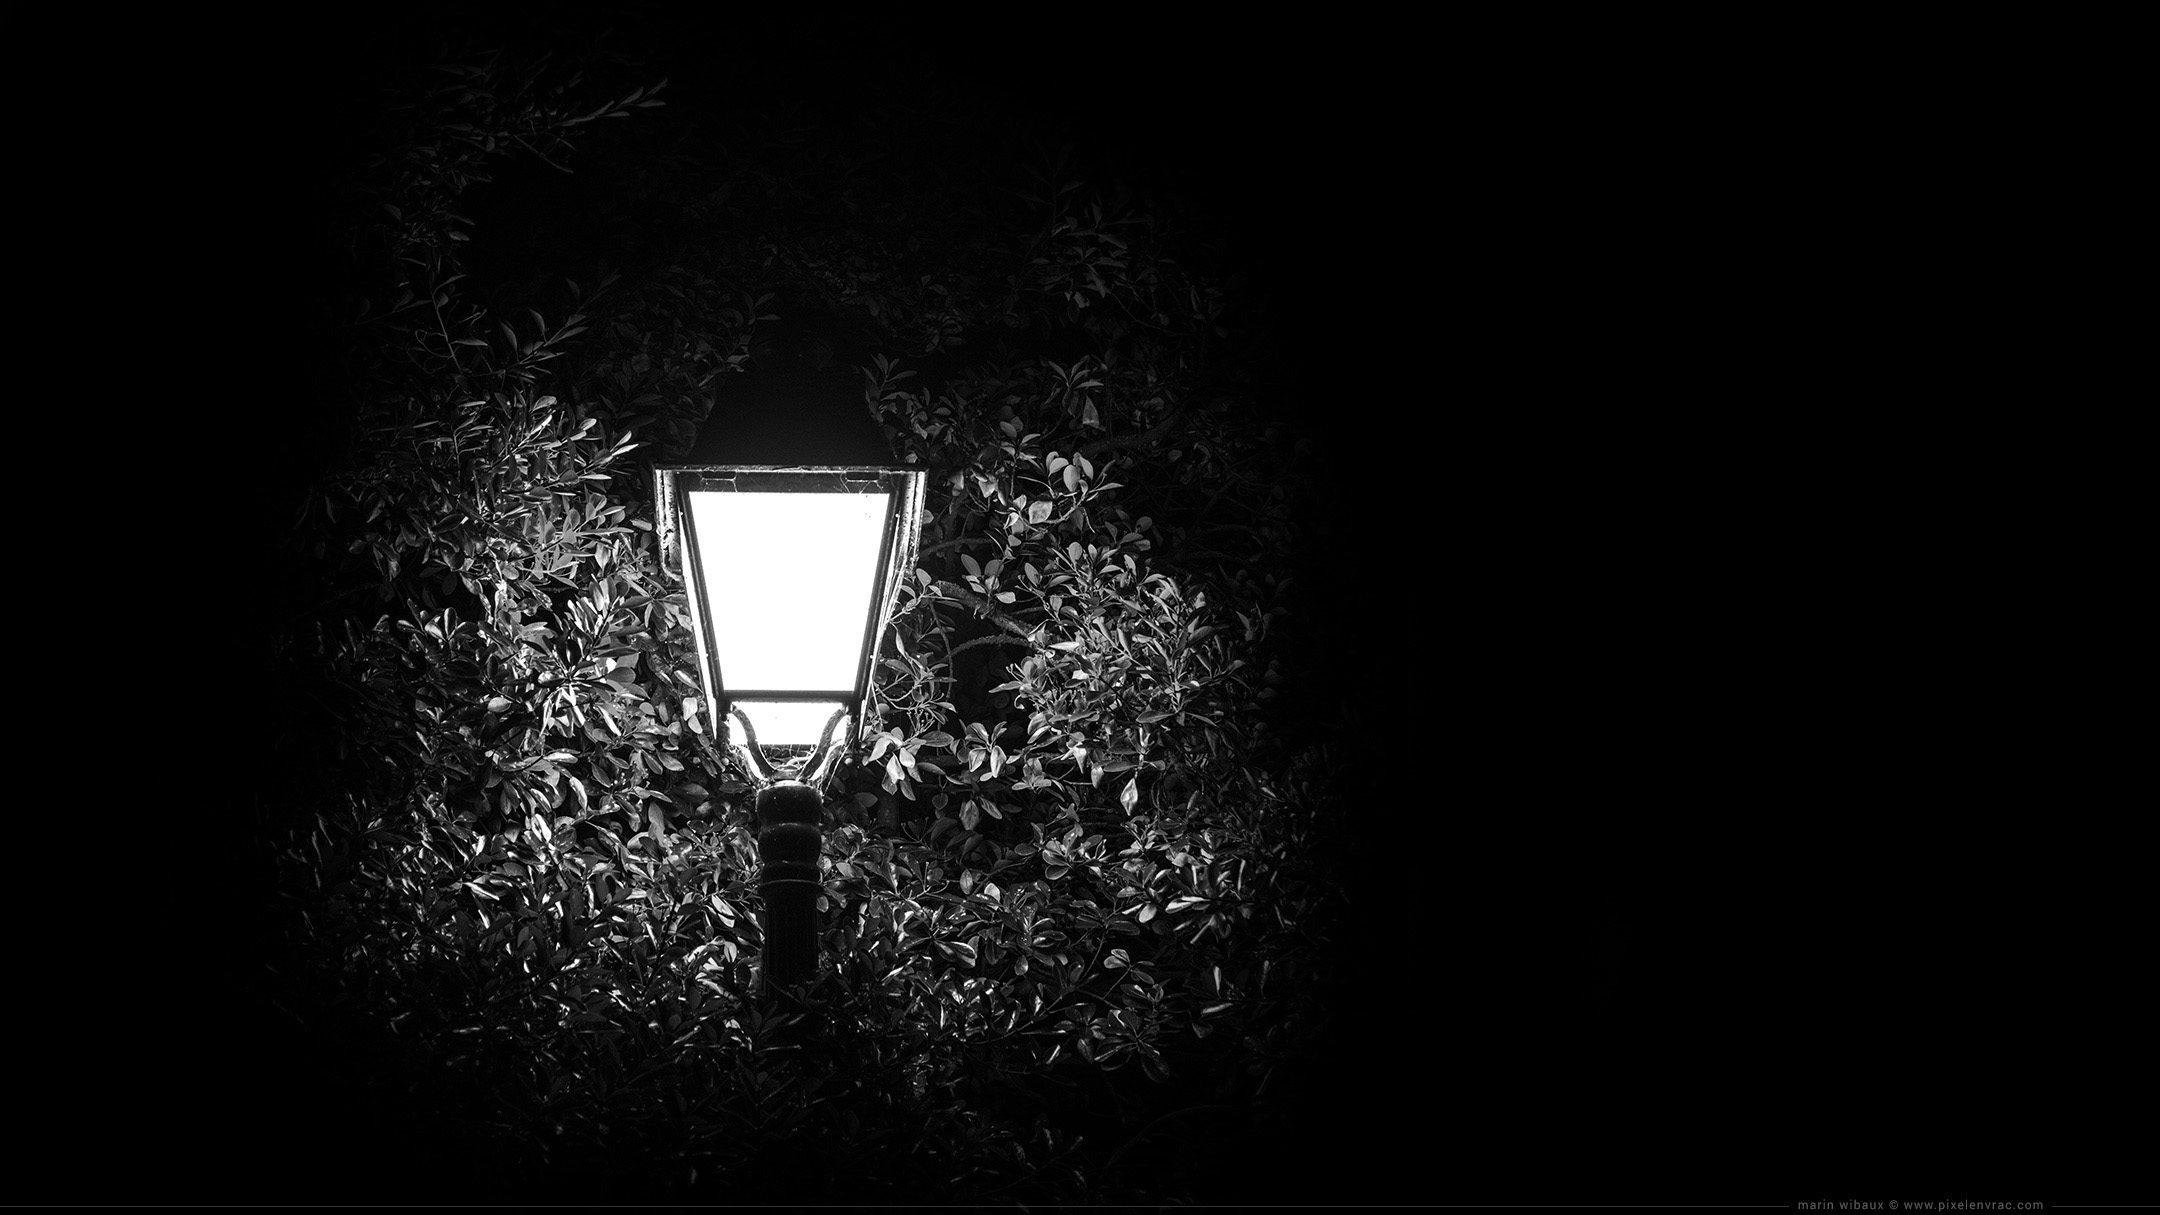 Wallpaper noir et blanc : photo de réverbère de nuit pour fond d'écran sur fond noir